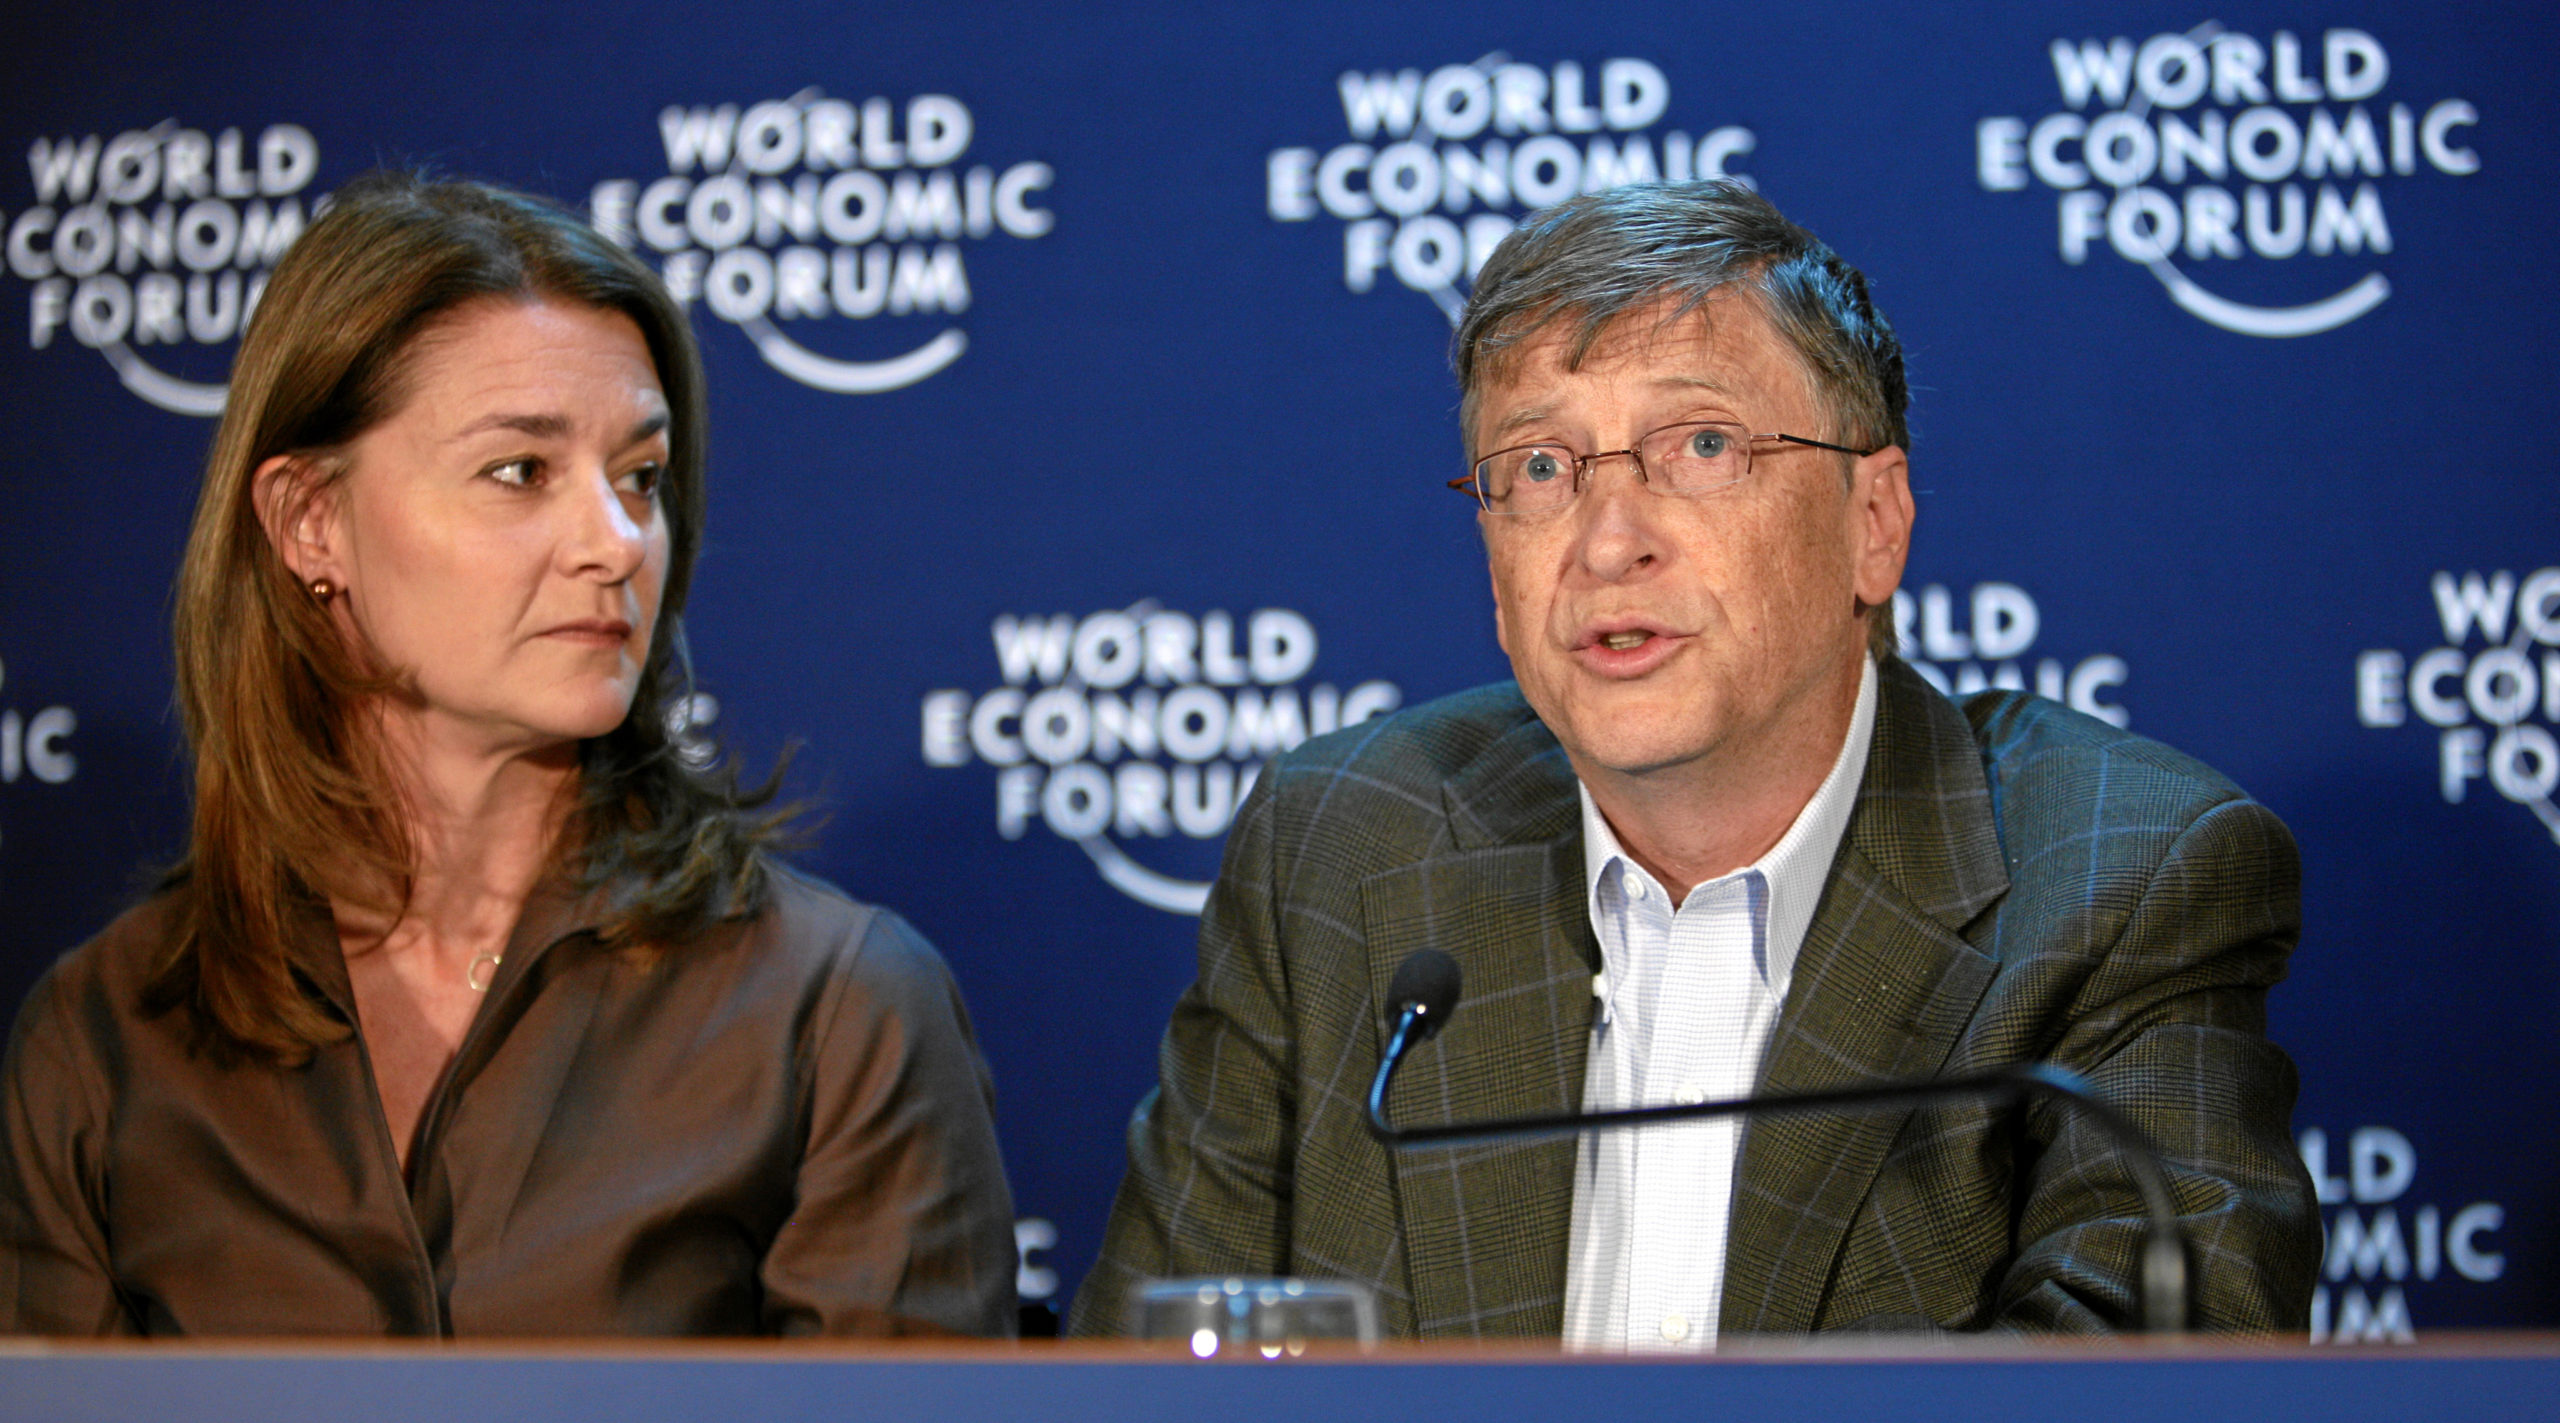 Gates Foundation: Melinda French Gates, Bill Gates